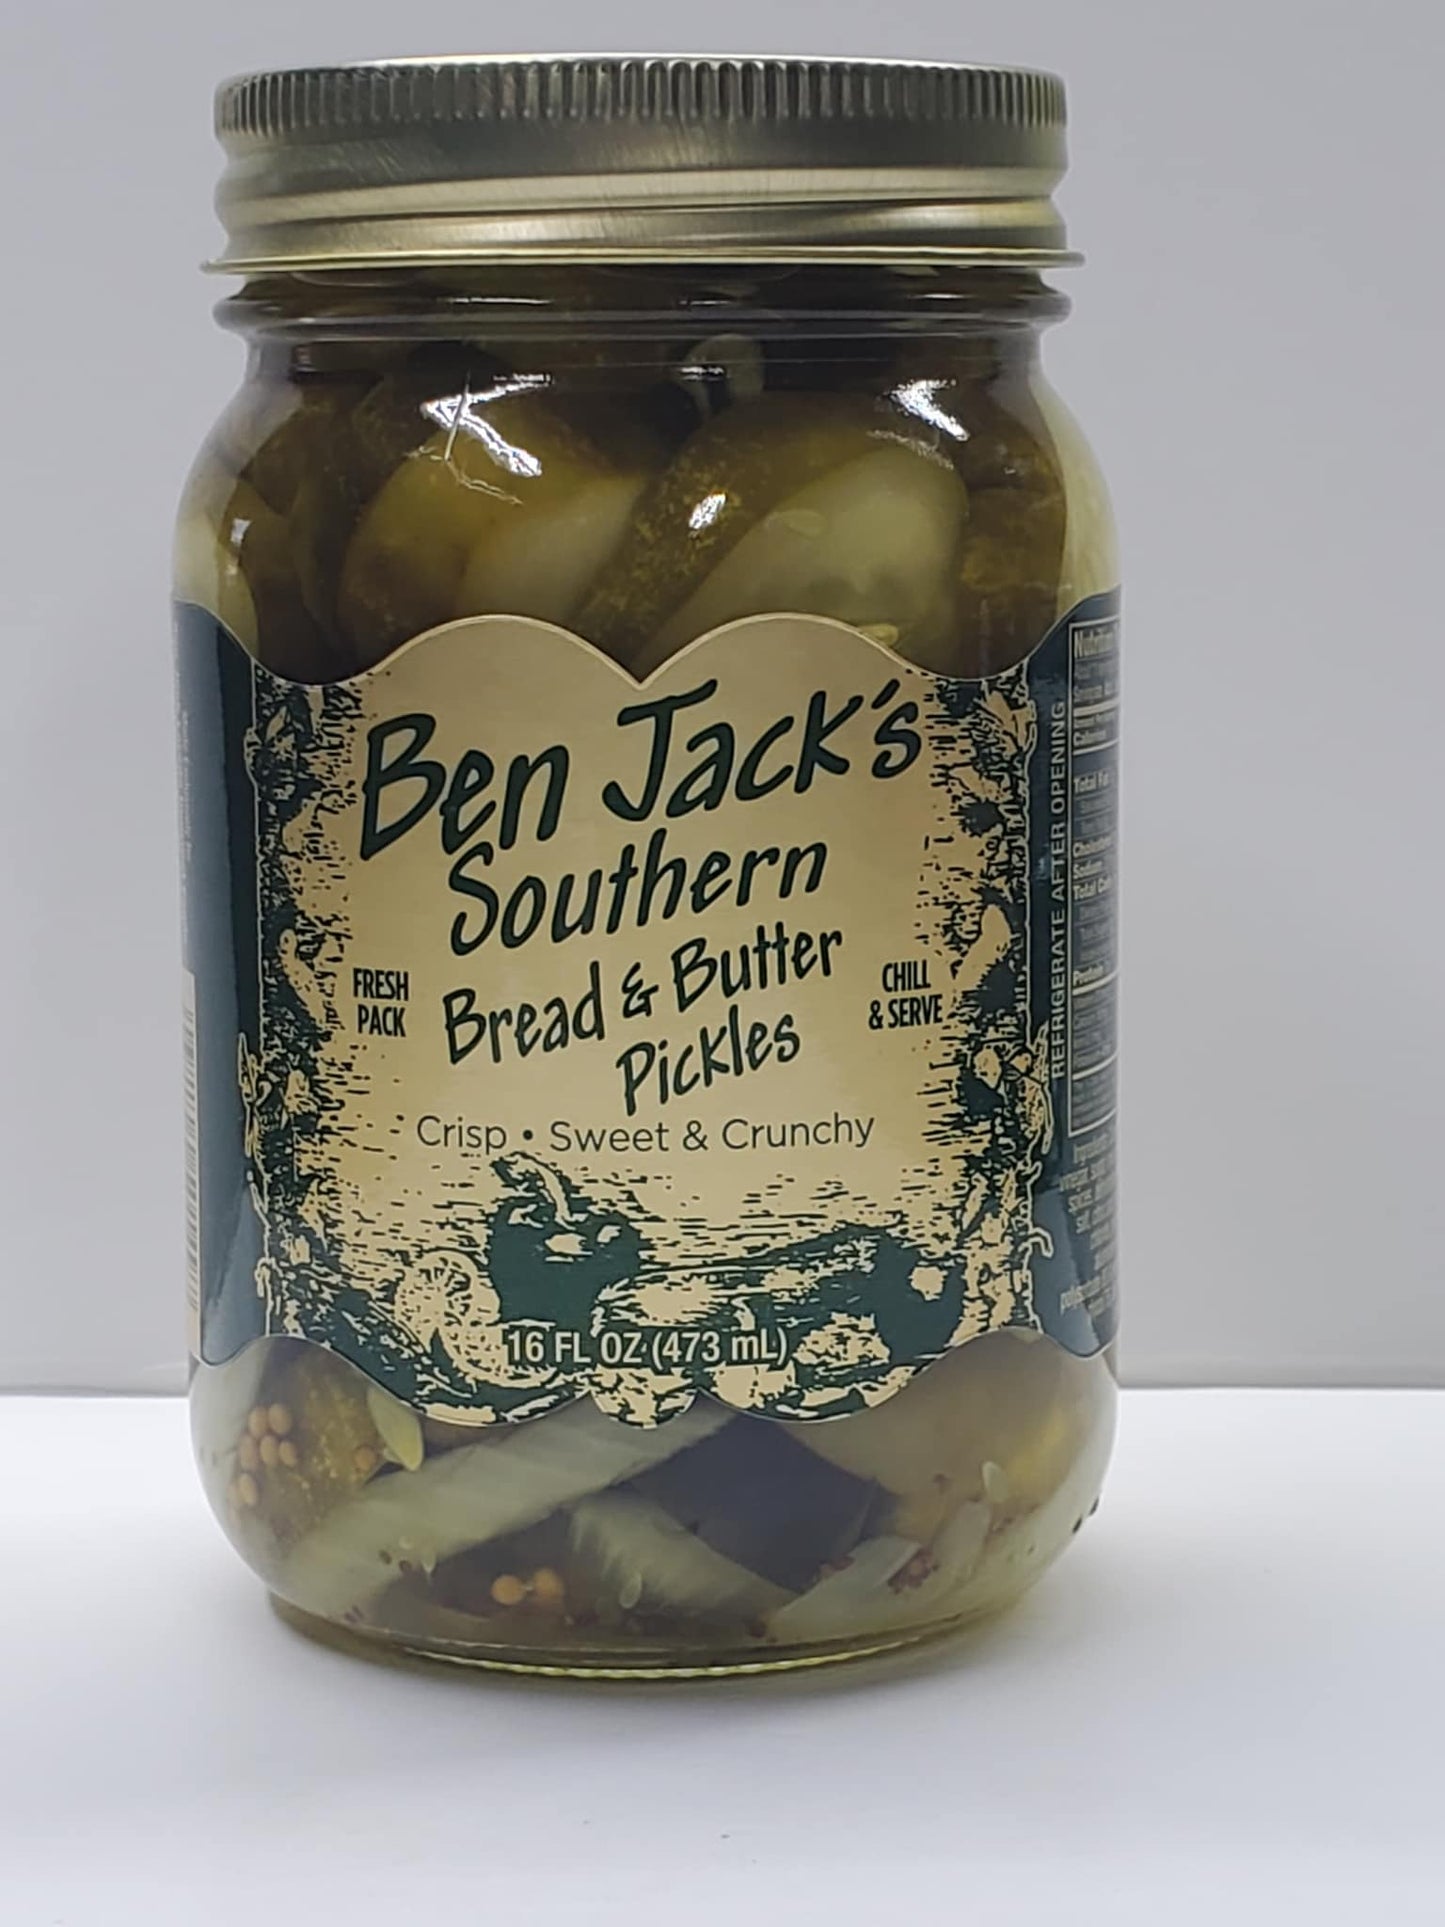 Ben Jack Bread & Butter Pickles